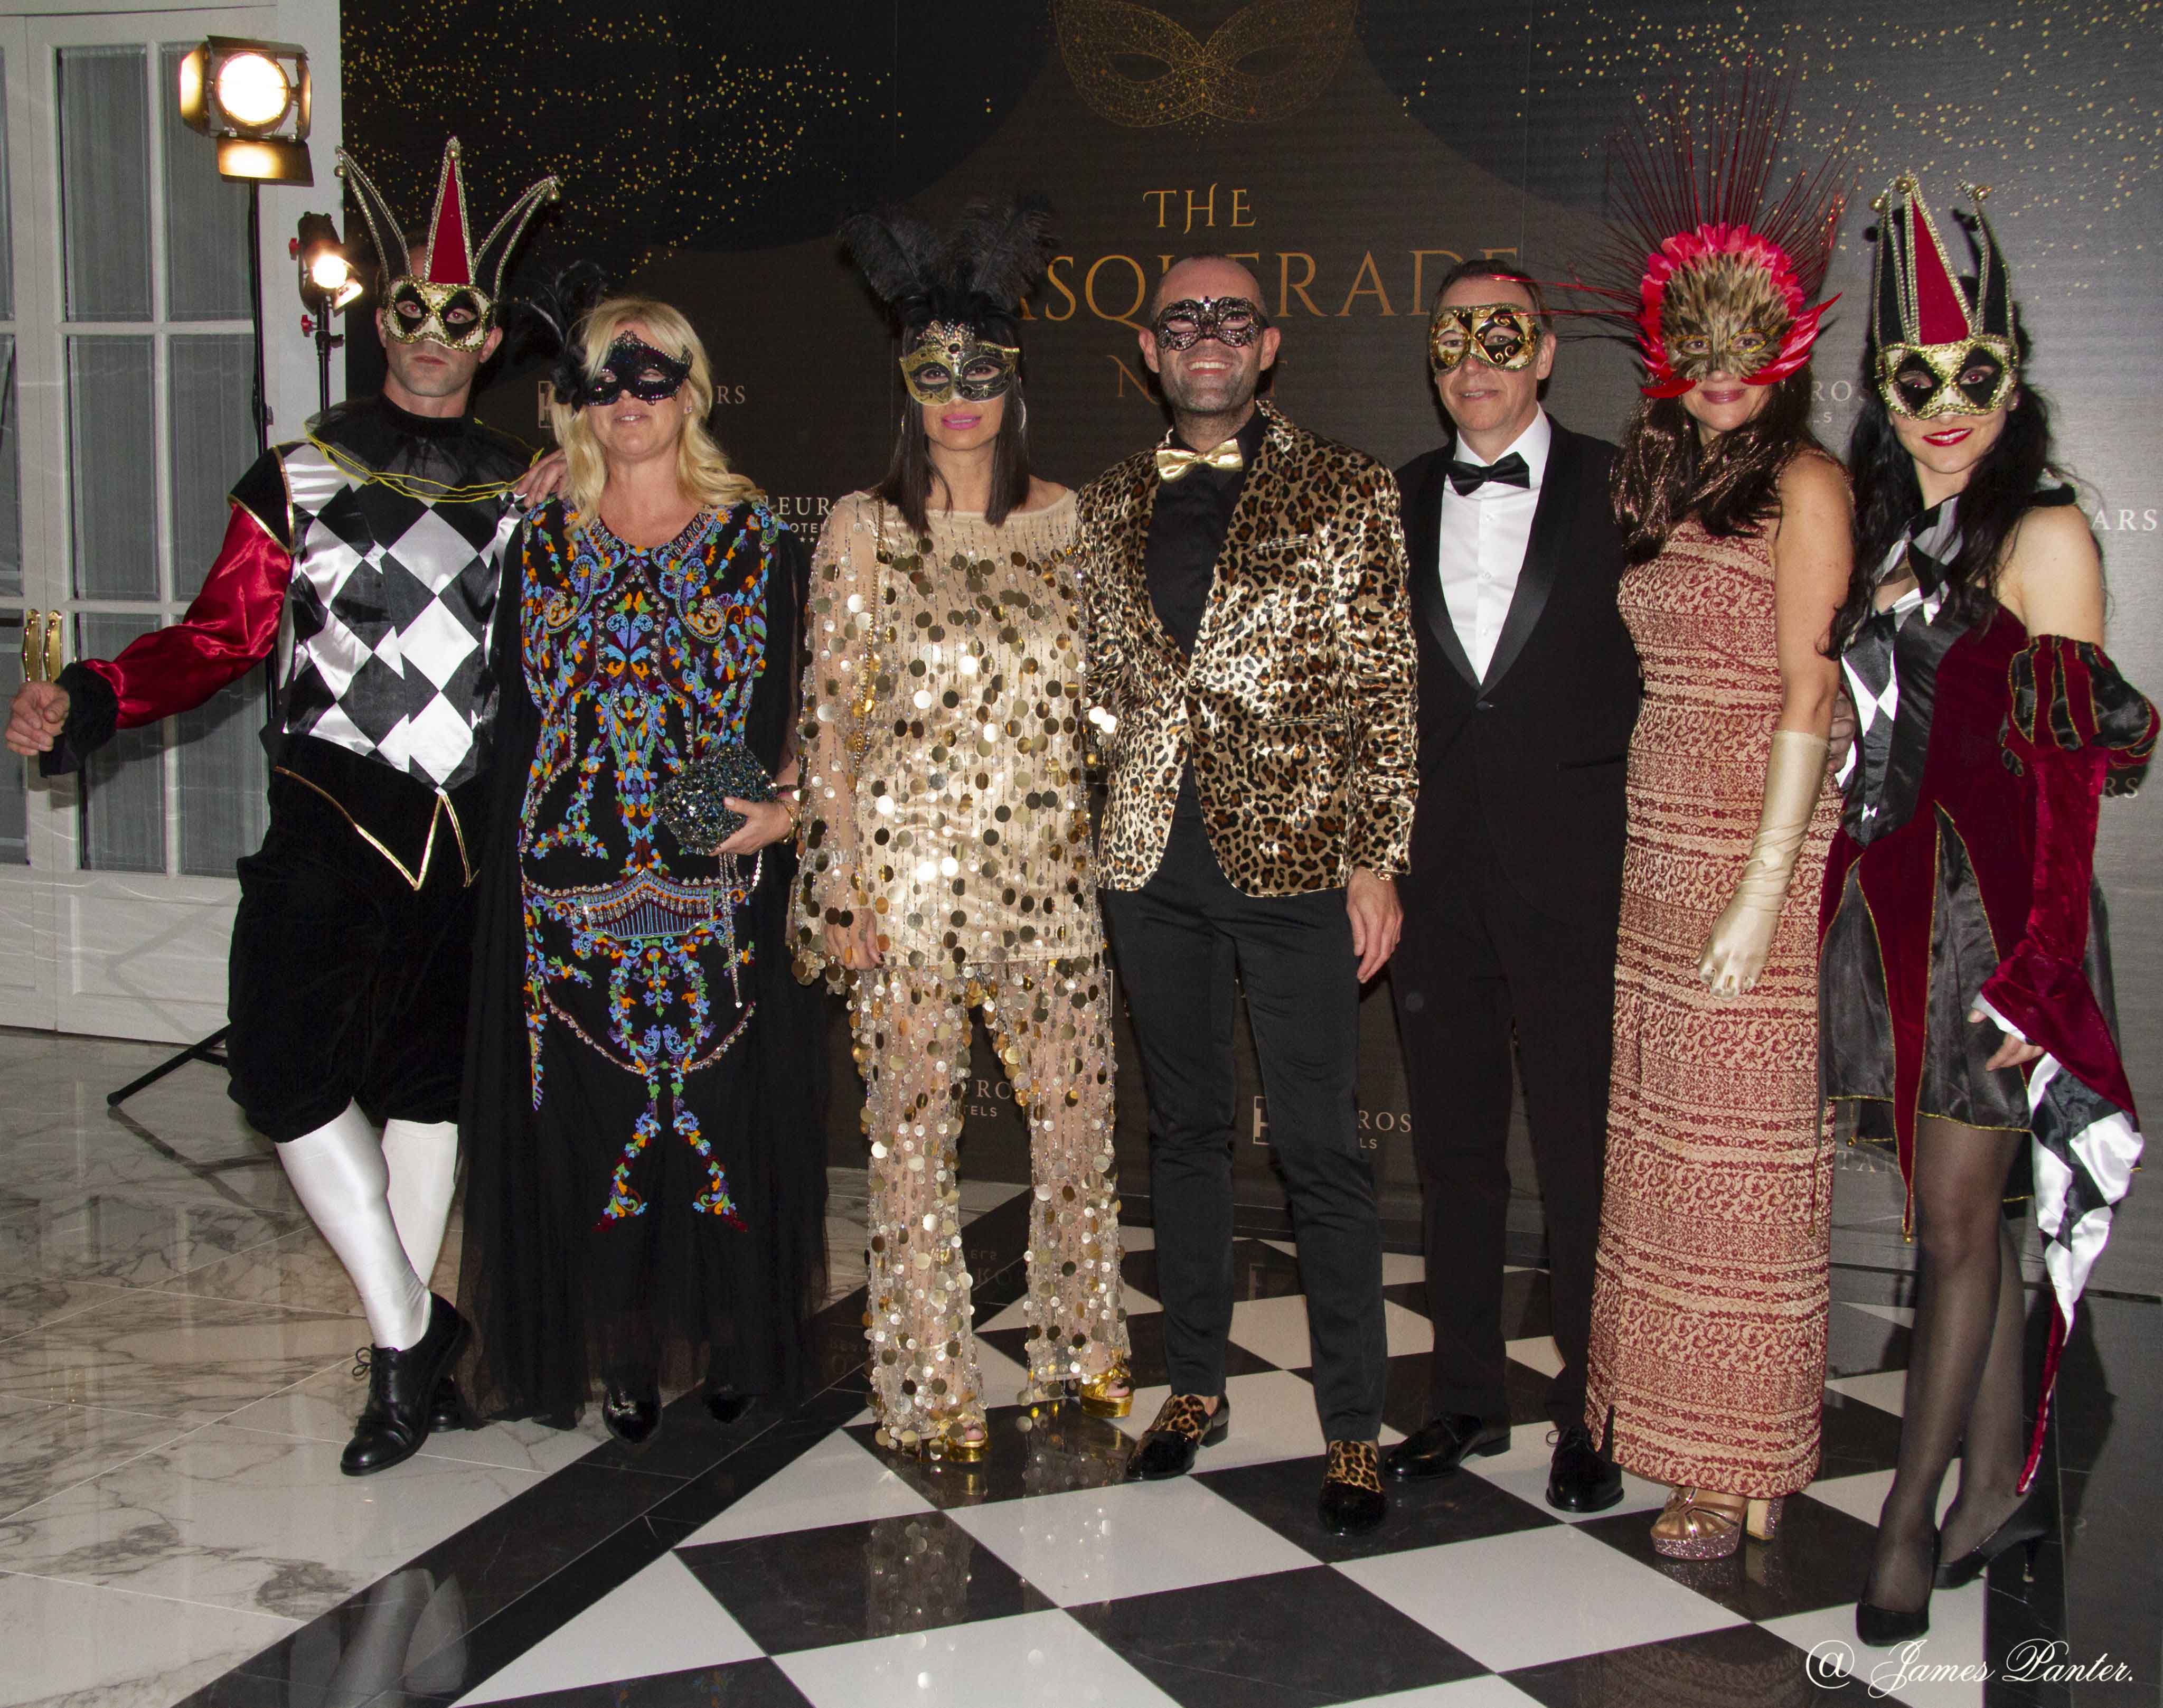 El Hotel Real organizó una cosmopolita fiesta de Carnaval con actuaciones en directo y premios para los mejores estilismos